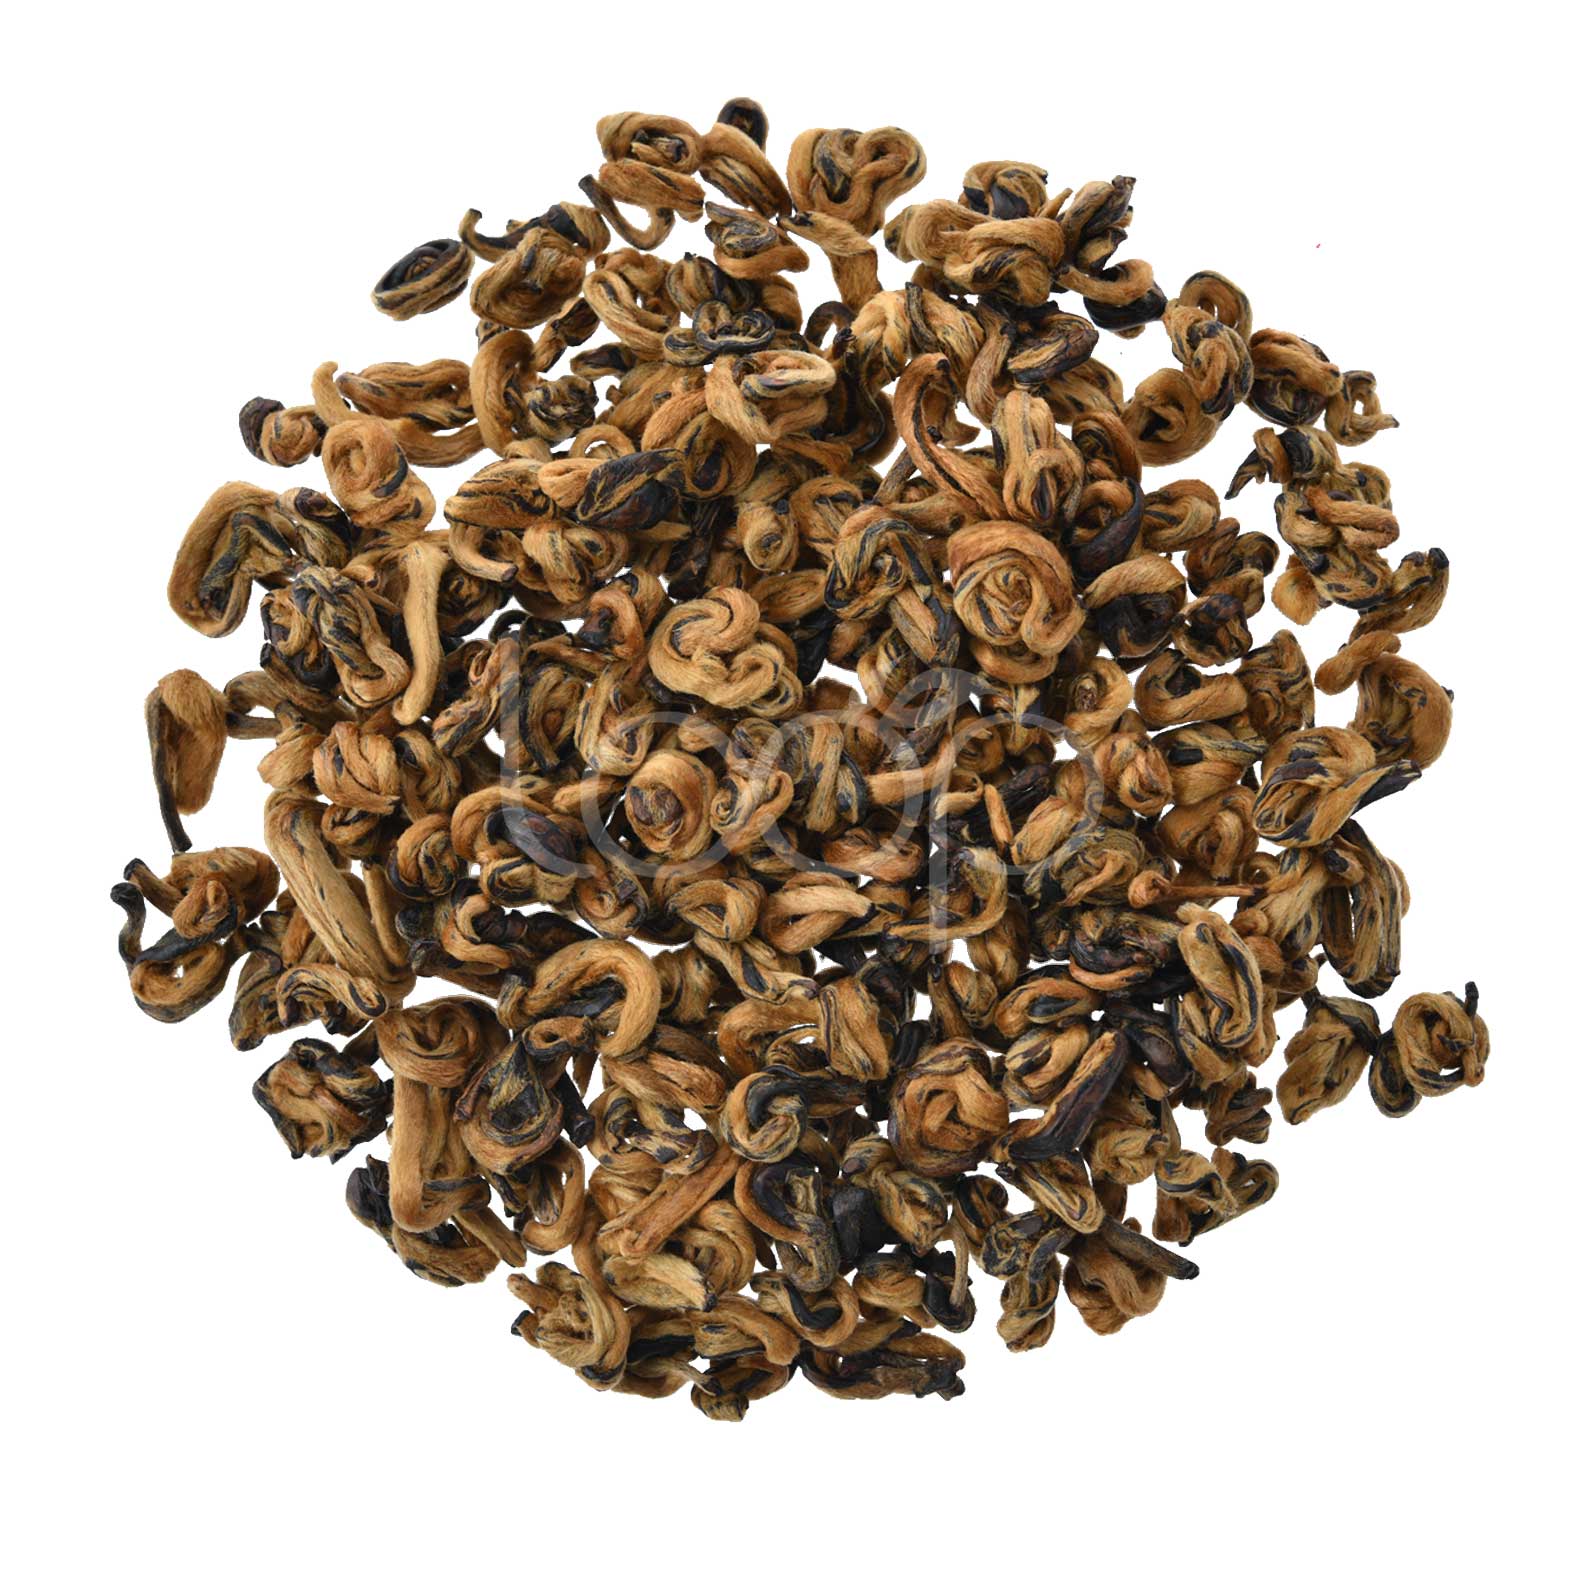 OEM Manufacturer Organic Lapsang Souchong Tea - Golden Spiral Tea China Black Tea #1 – Goodtea